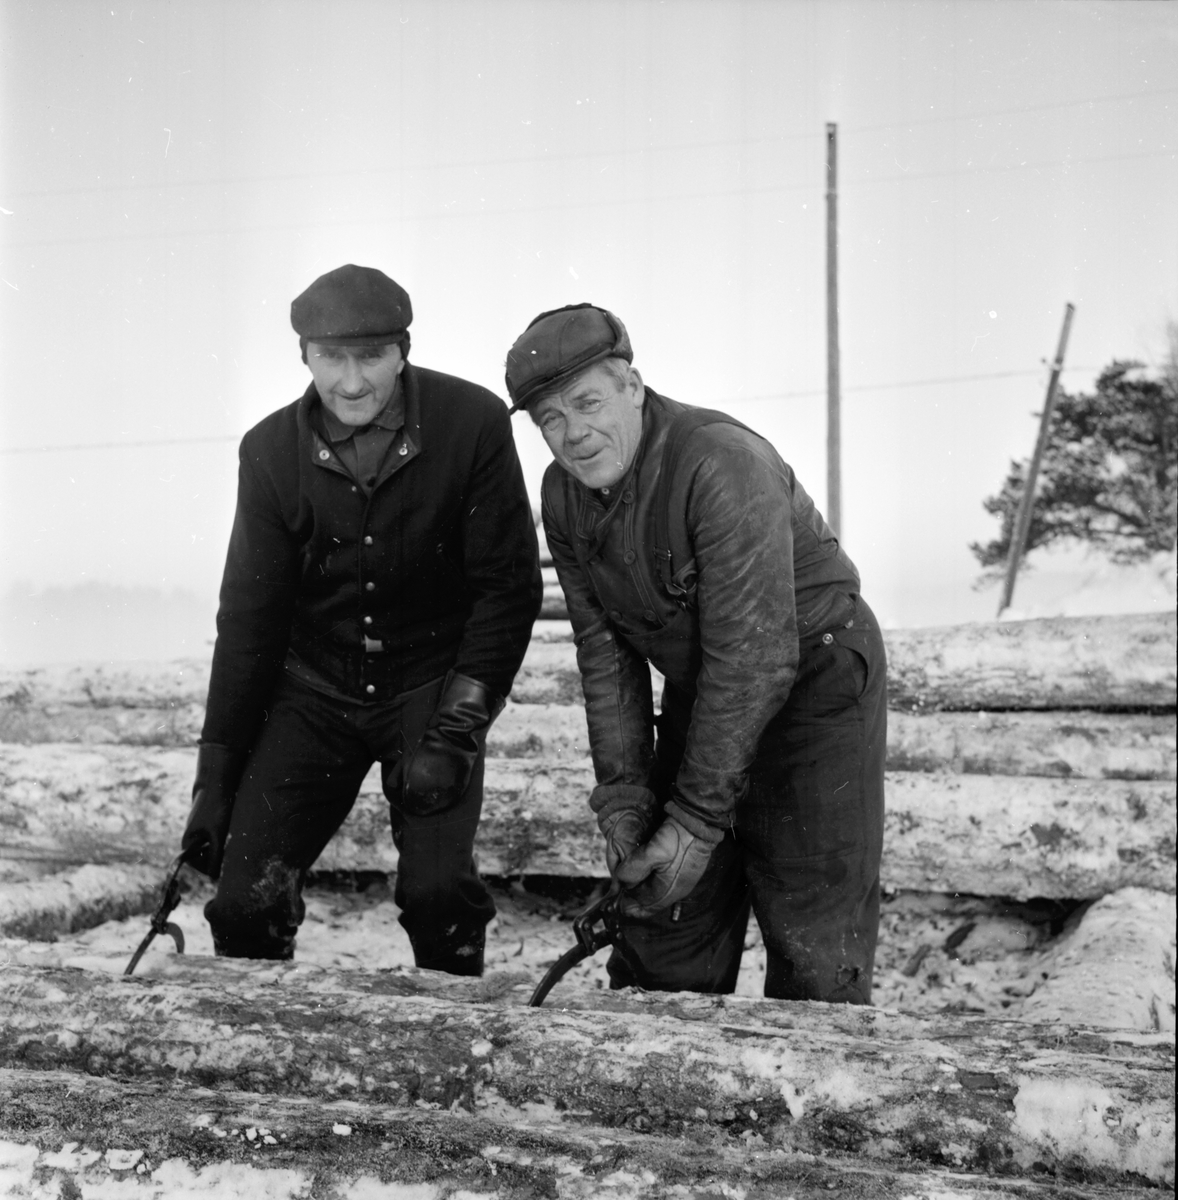 Kyliga arbetsplatser,
19 Jan 1966
Två män hanterar timmer med timmersax på vintern.